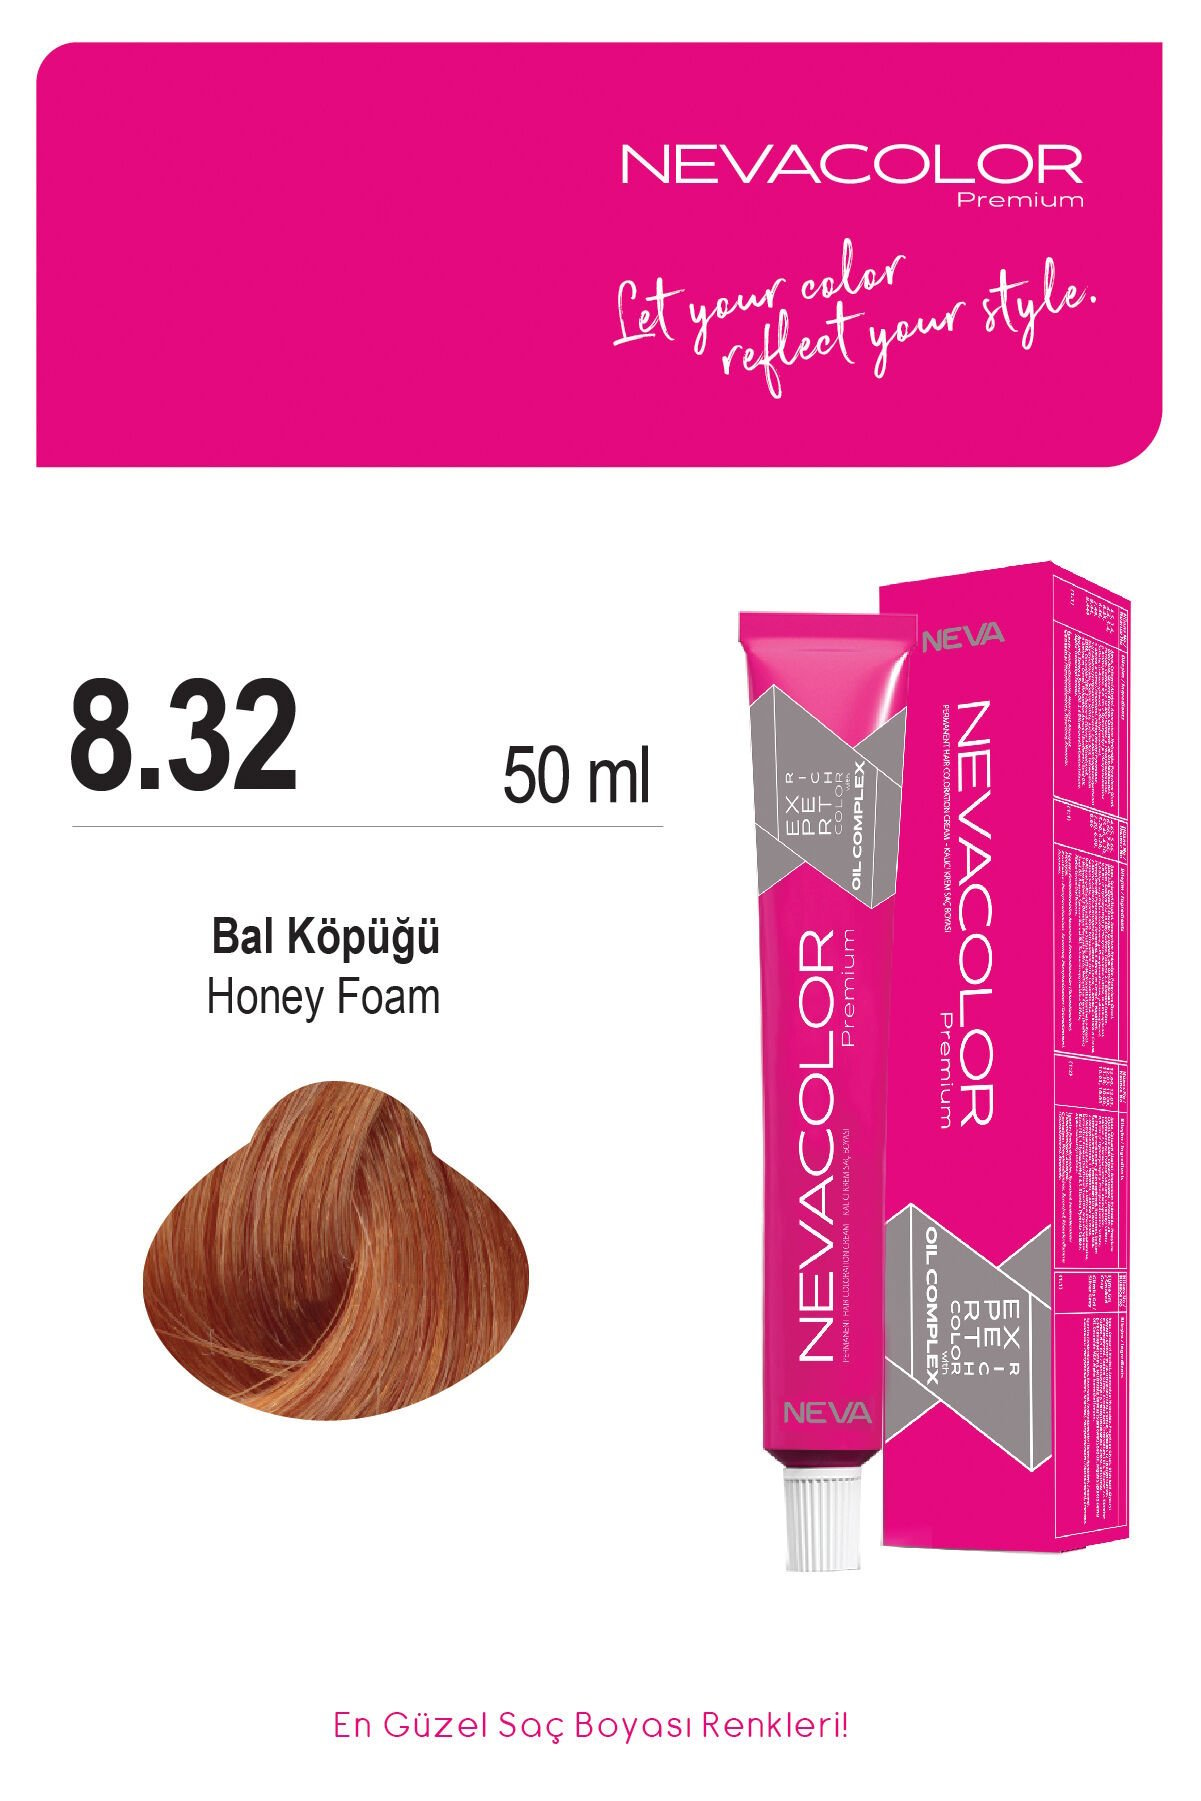 Nevacolor Premium 8.32 Bal Köpüğü - Kalıcı Krem Saç Boyası 50 g Tüp